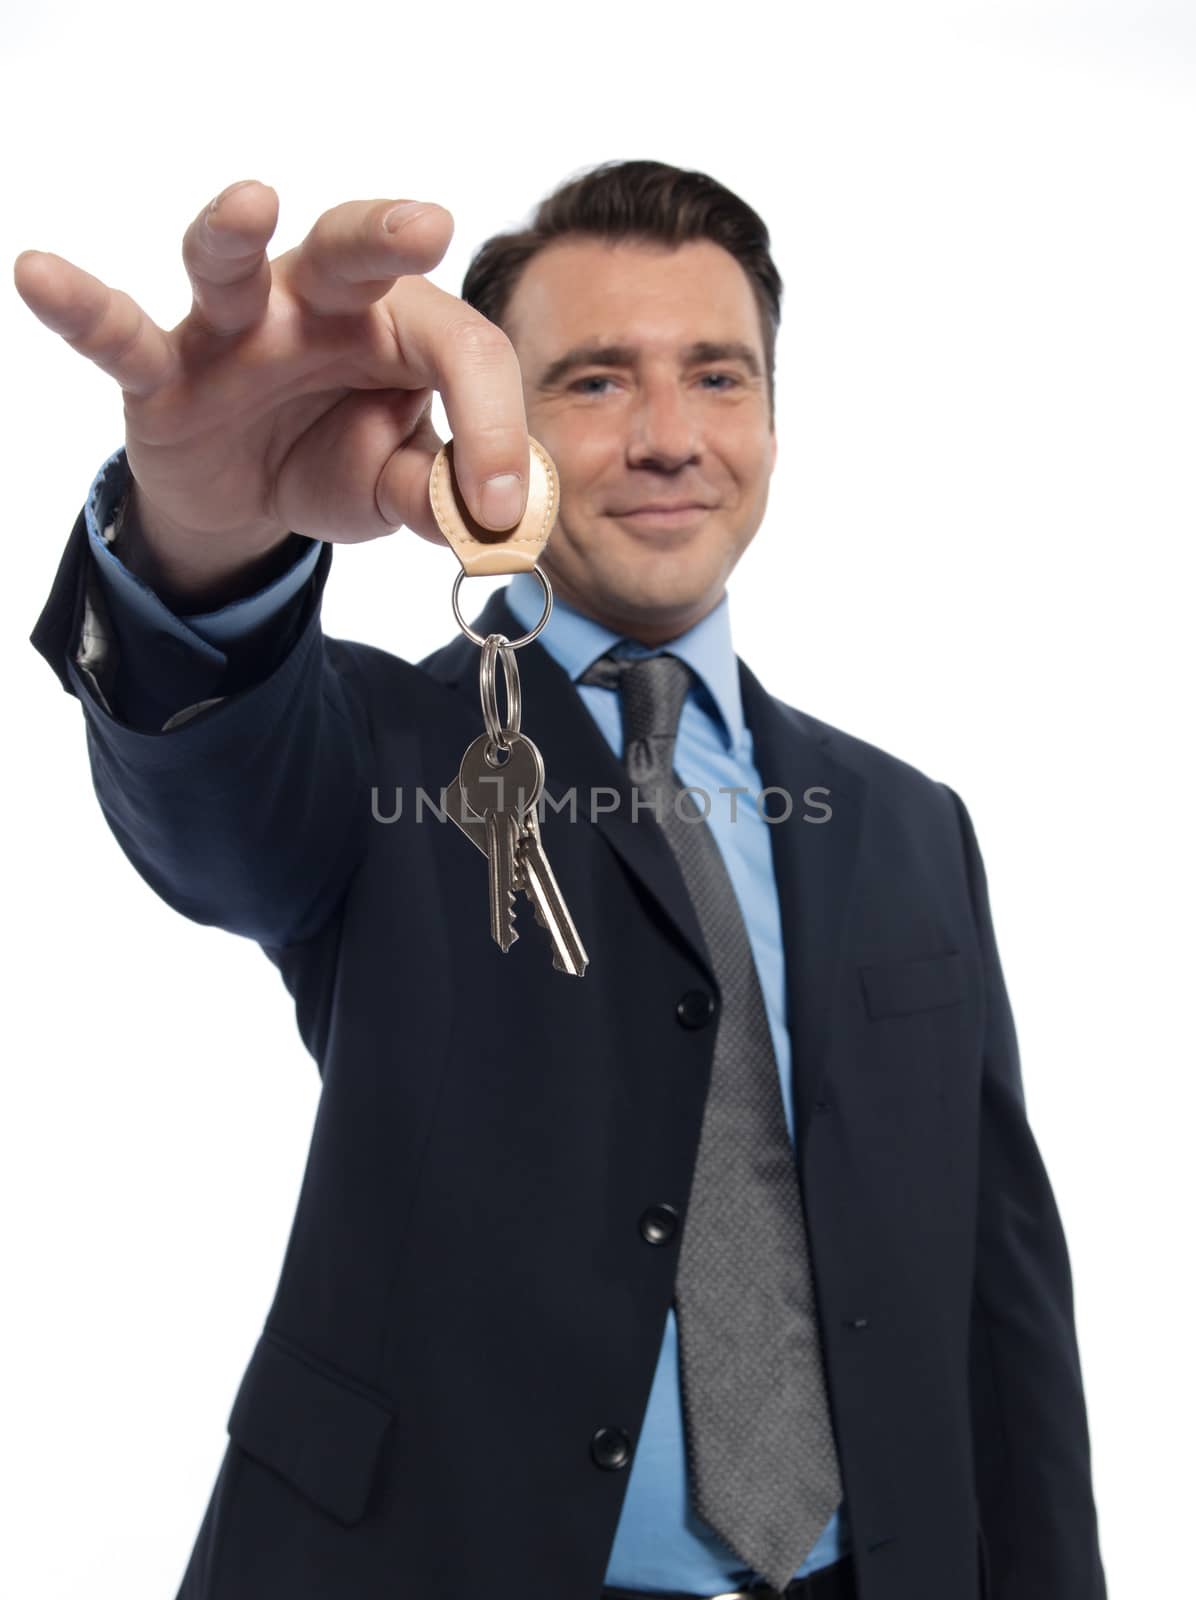 Man Businessman realtor teasing holding offering keys by PIXSTILL